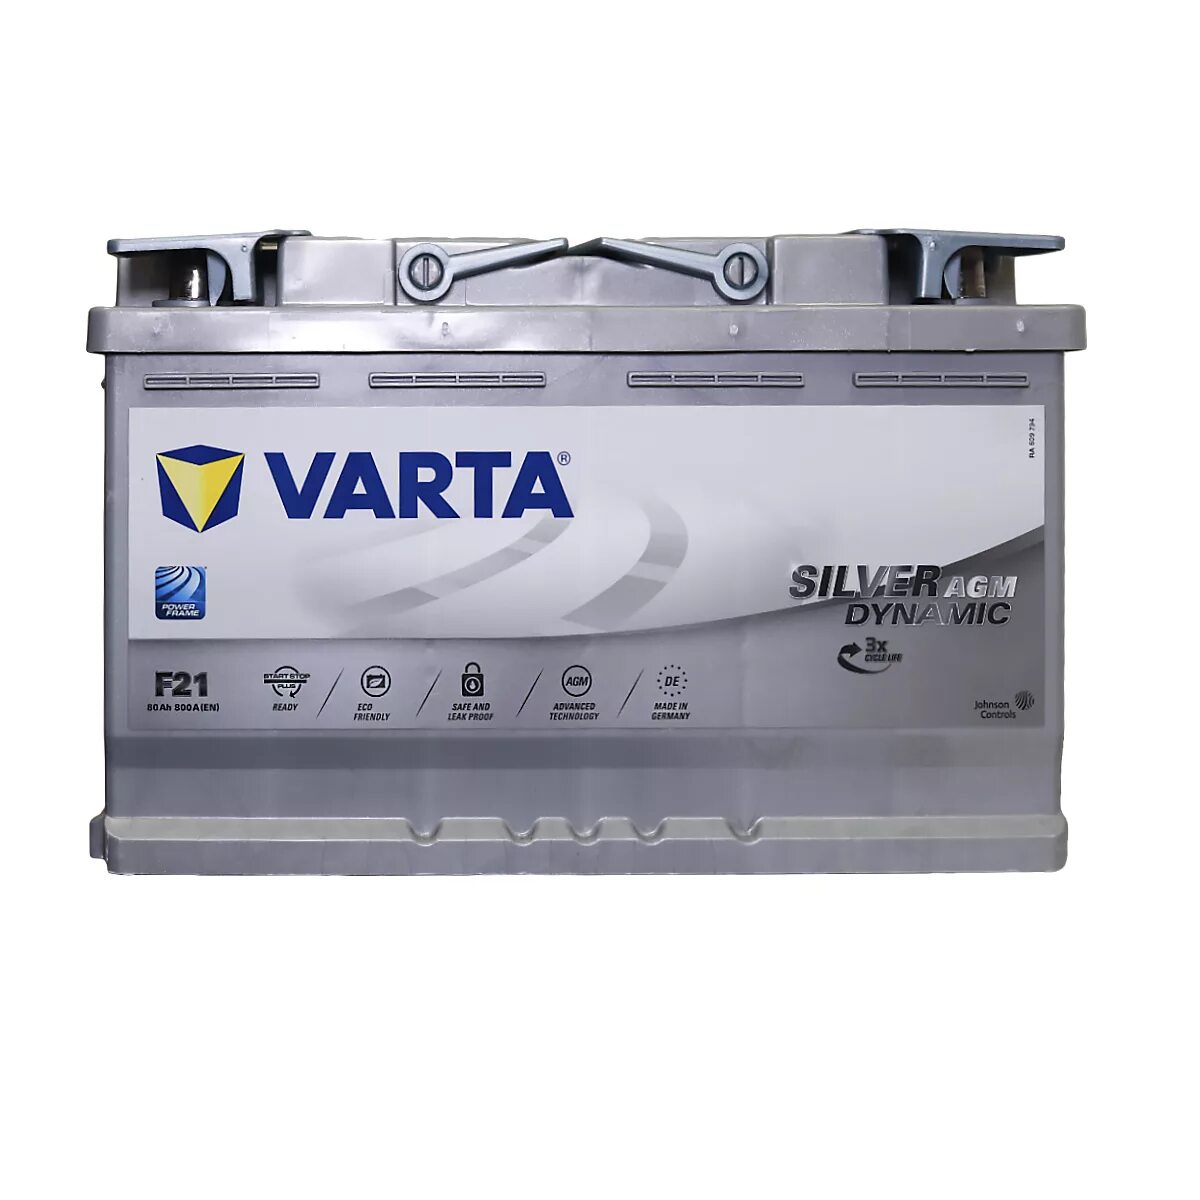 580901080 Varta. Varta Silver Dynamic AGM f21. 580901080 Varta аккумулятор. Аккумулятор Varta Silver Dynamic AGM f21 (580 901 080) 315x175x190.